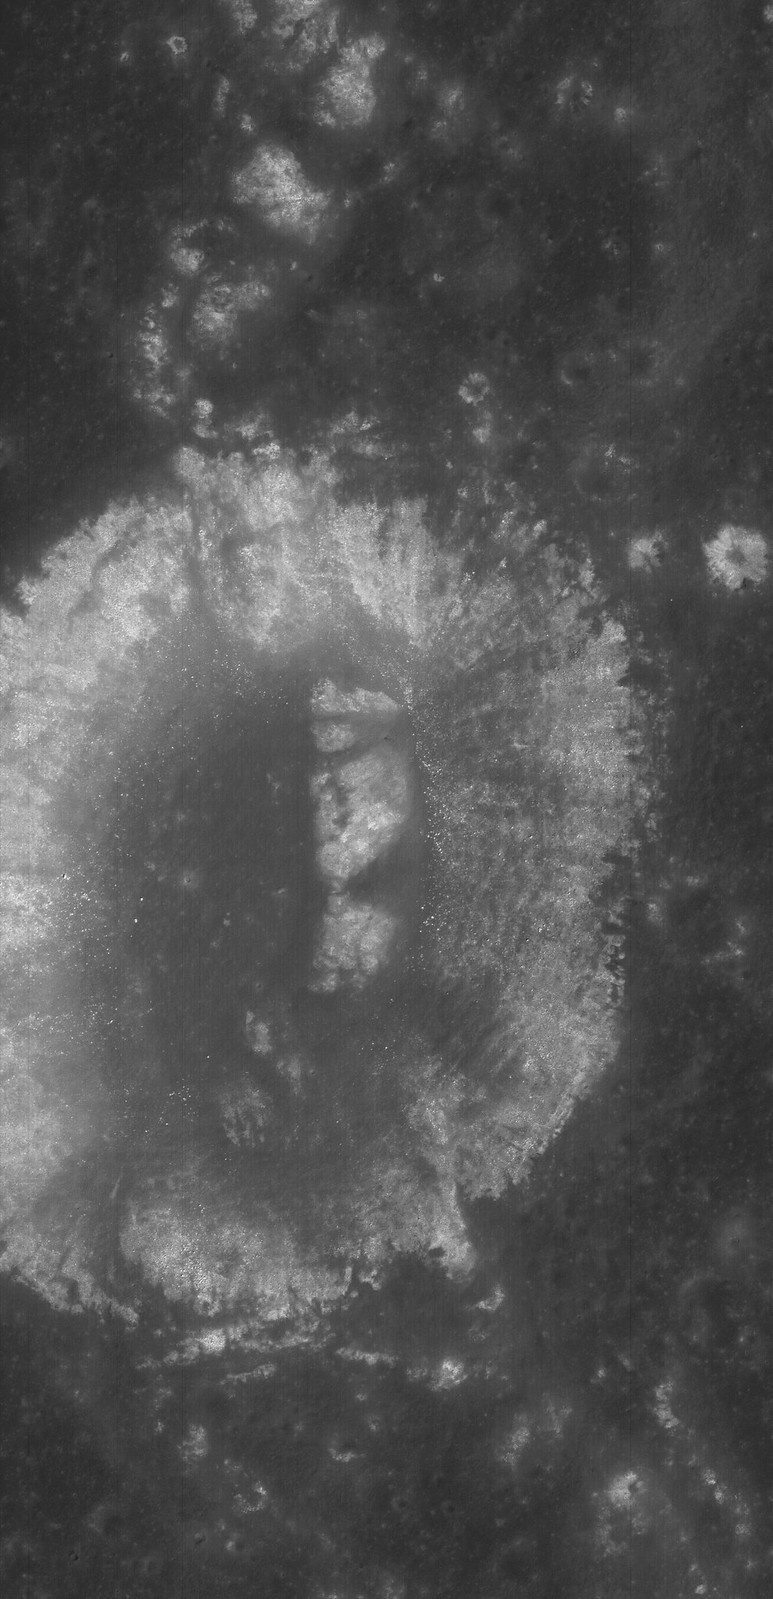 Lunar Pioneer: Littered wrinkle ridge in west Mare Nubium